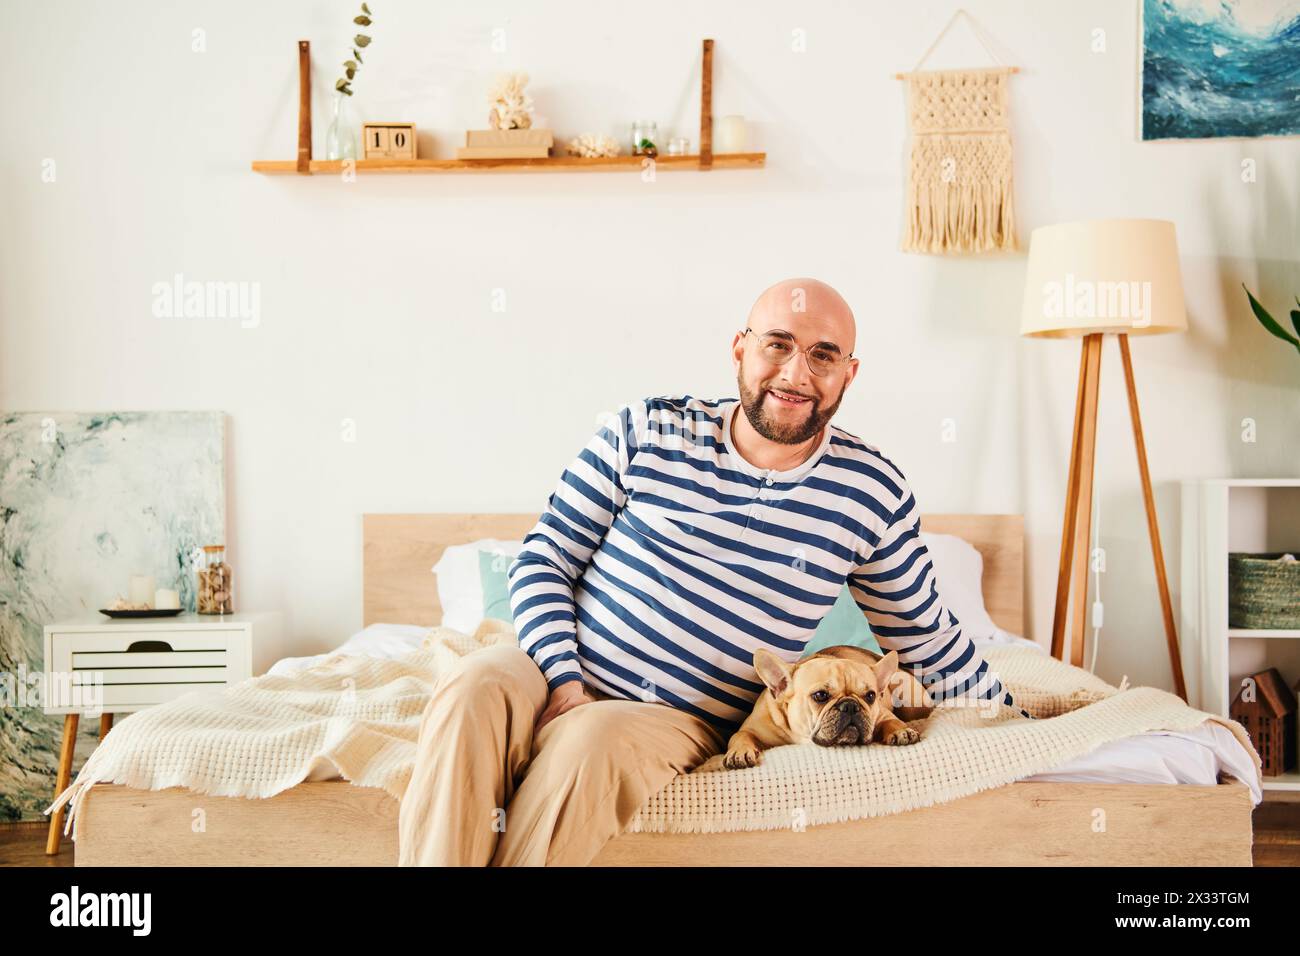 Ein Mann mit Brille sitzt friedlich auf einem Bett, begleitet von seiner französischen Bulldogge. Stockfoto